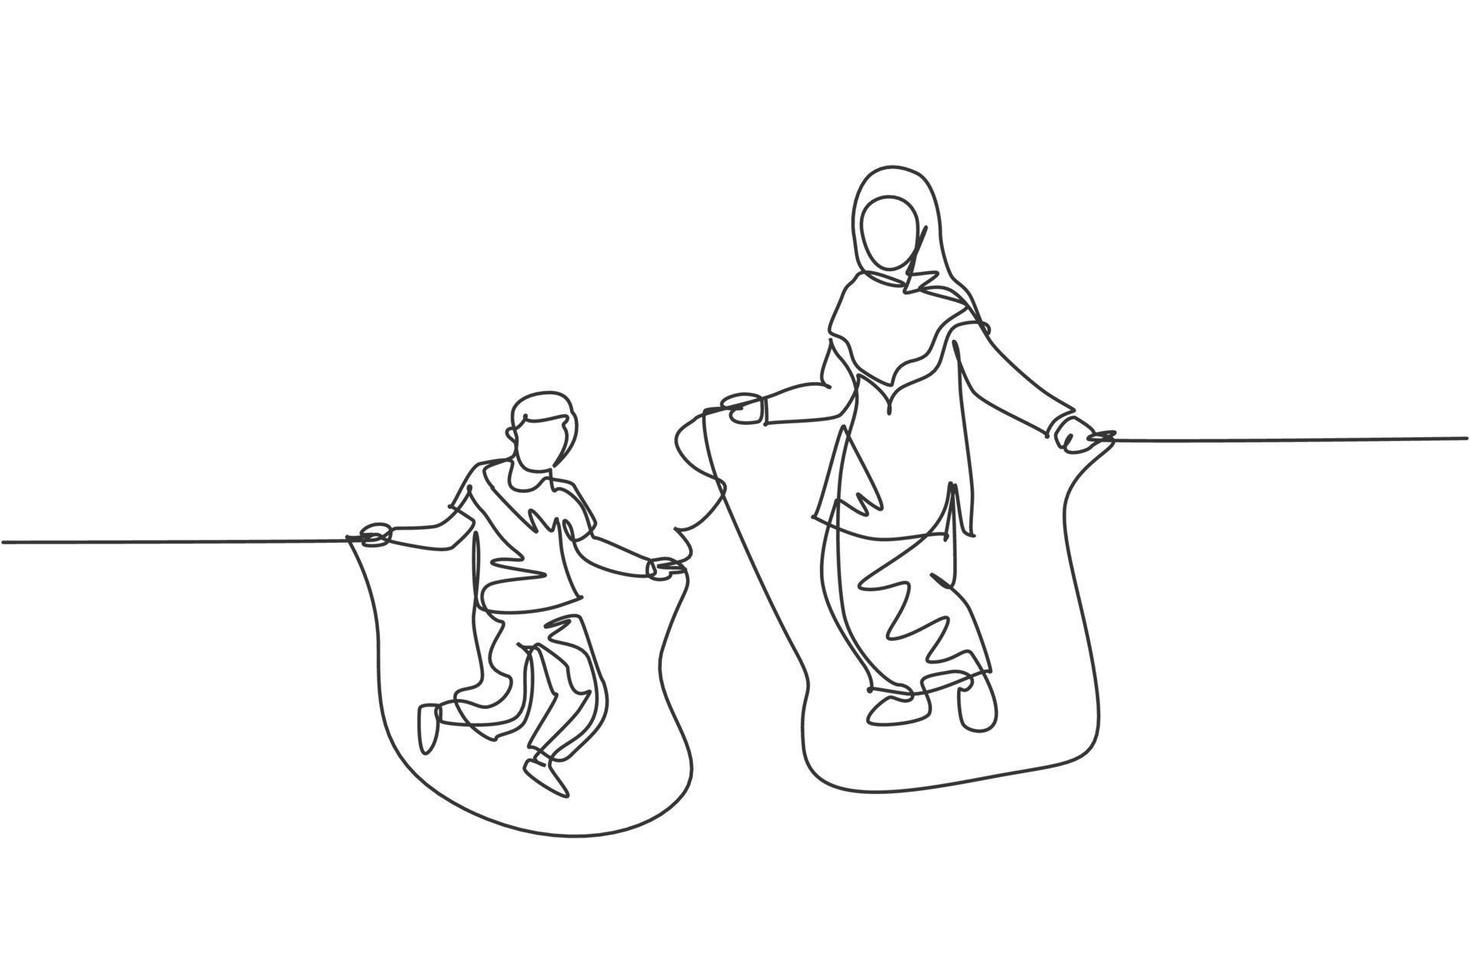 dibujo de una sola línea continua de una joven madre islámica y su hijo jugando a saltar la cuerda y saltar. concepto de maternidad de familia feliz musulmana árabe. Ilustración de vector de diseño de dibujo de una línea de moda